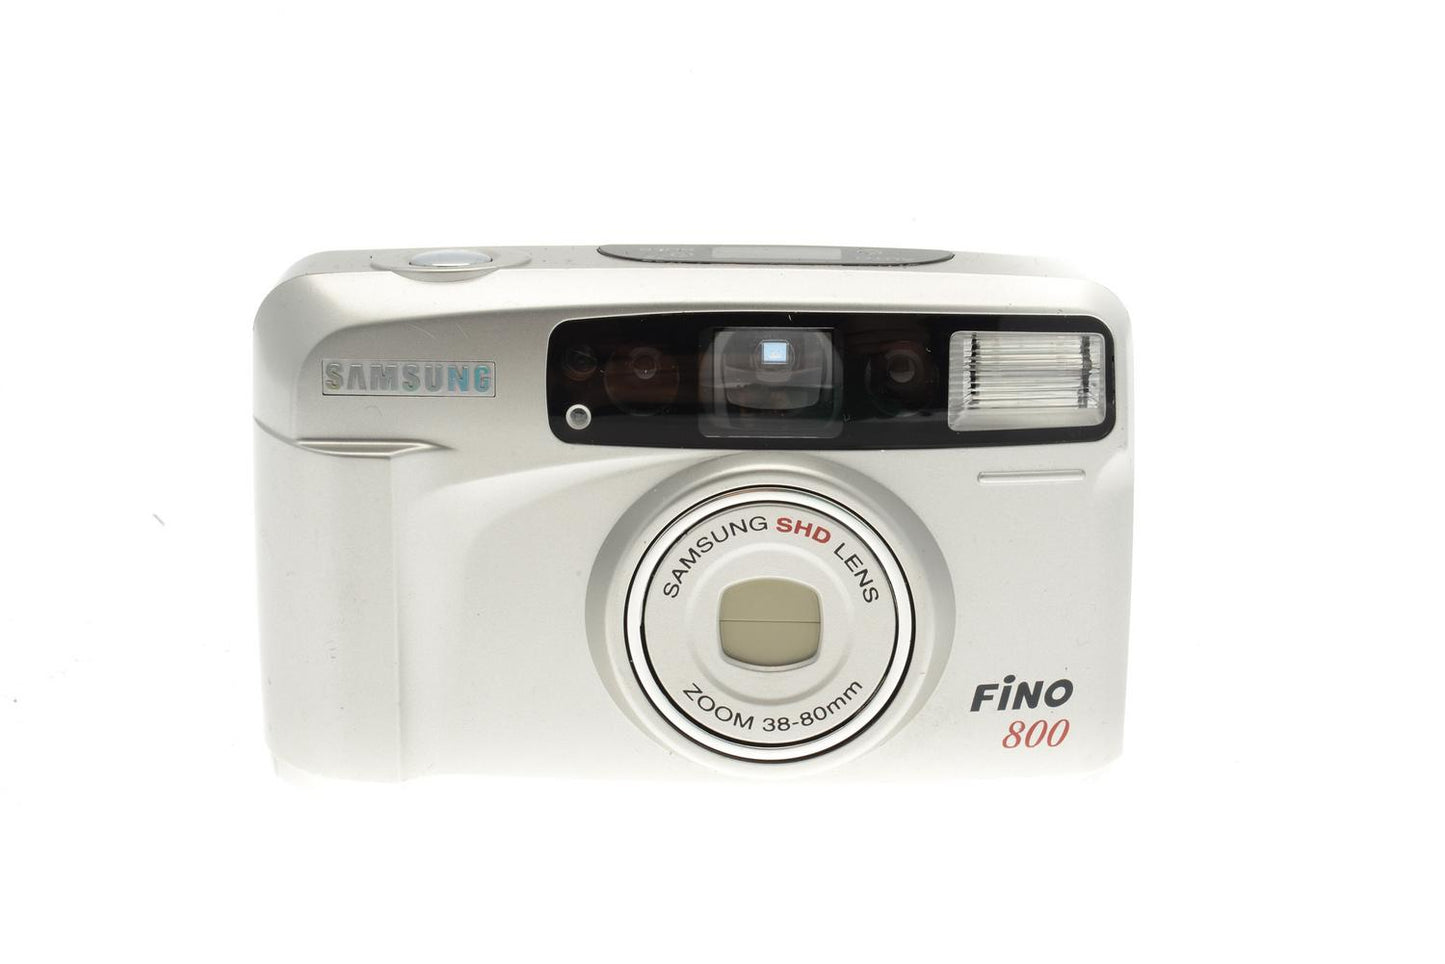 Samsung Fino 800 - Camera